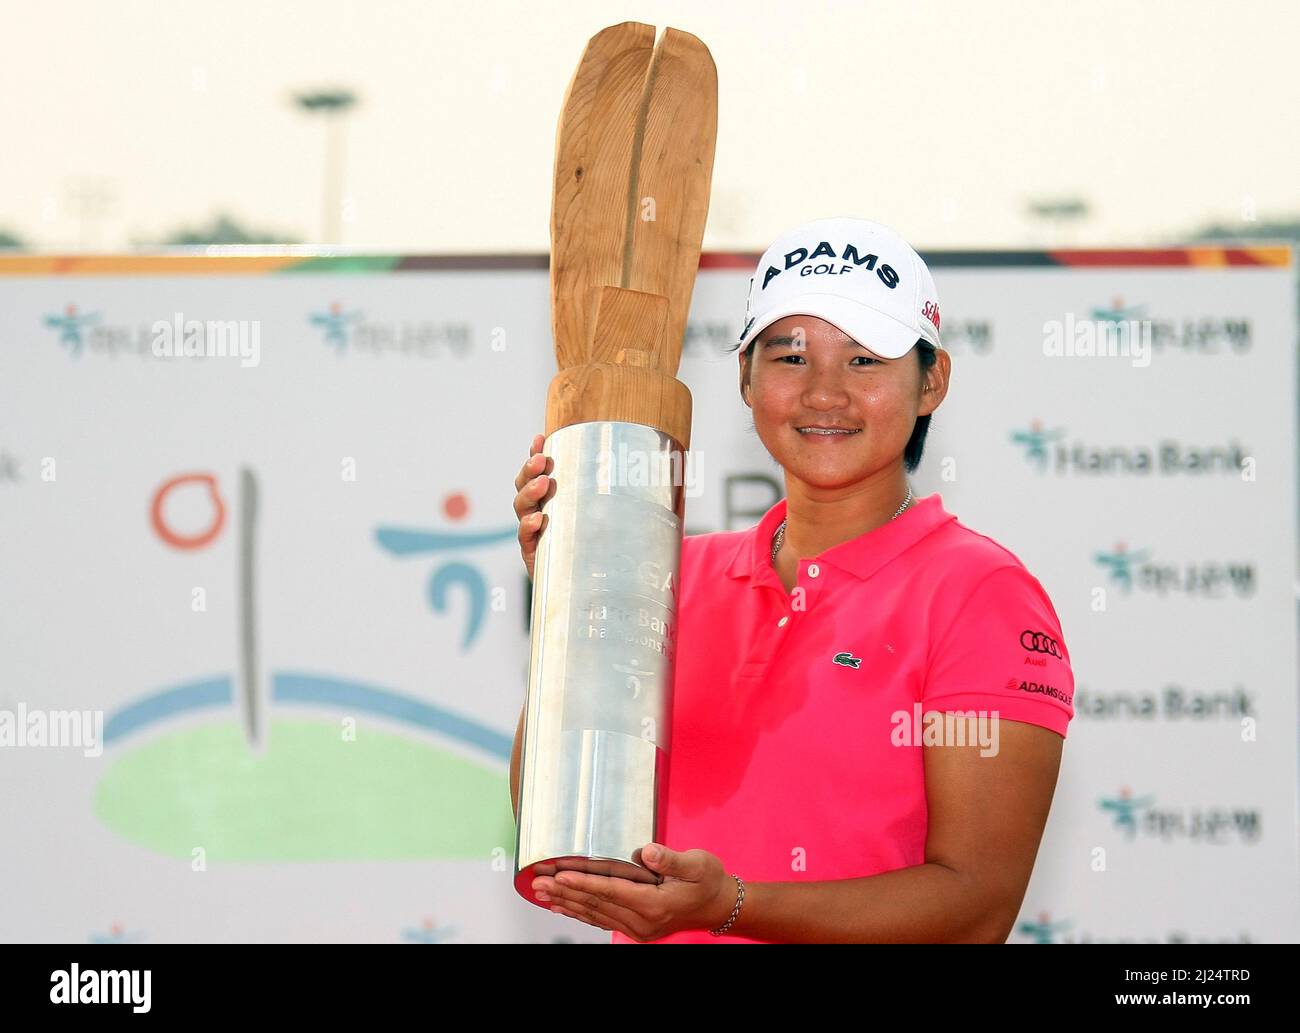 9 octobre 2011-Incheon, Corée du Sud-TSEVG, Yani de Taiwan, remporte la cérémonie après la fin du tournoi sur le 18th trous lors de la finale du championnat LPGA par Hana Bank au club de golf SKY72 à Incheon le 9 octobre 2011, Corée du Sud. Banque D'Images